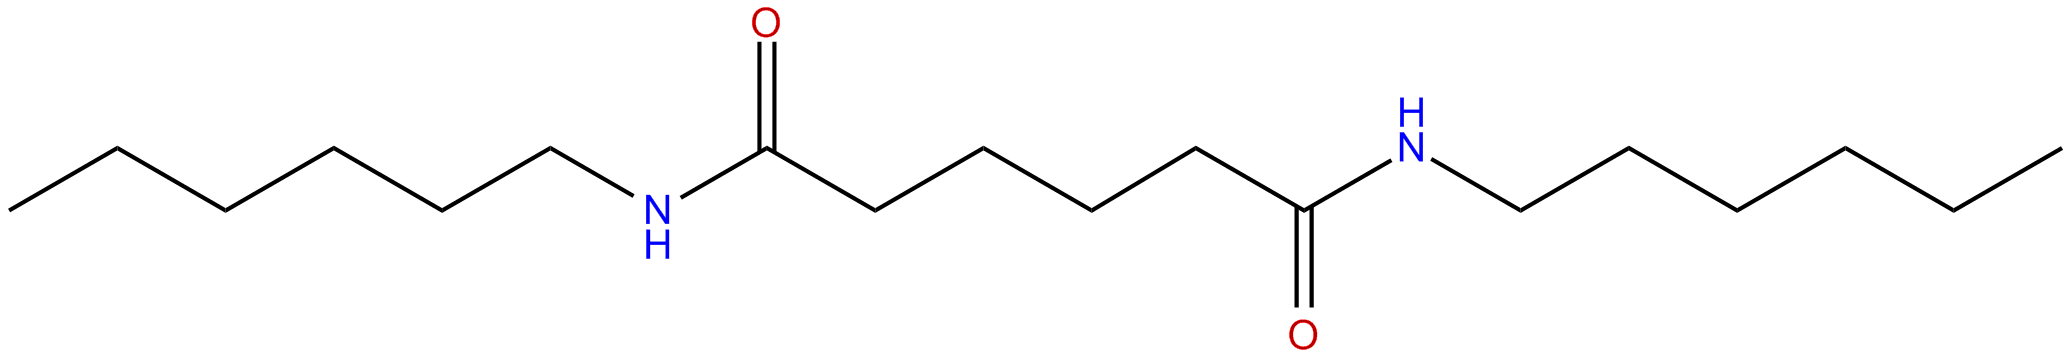 Image of N,N'-dihexylhexanediamide